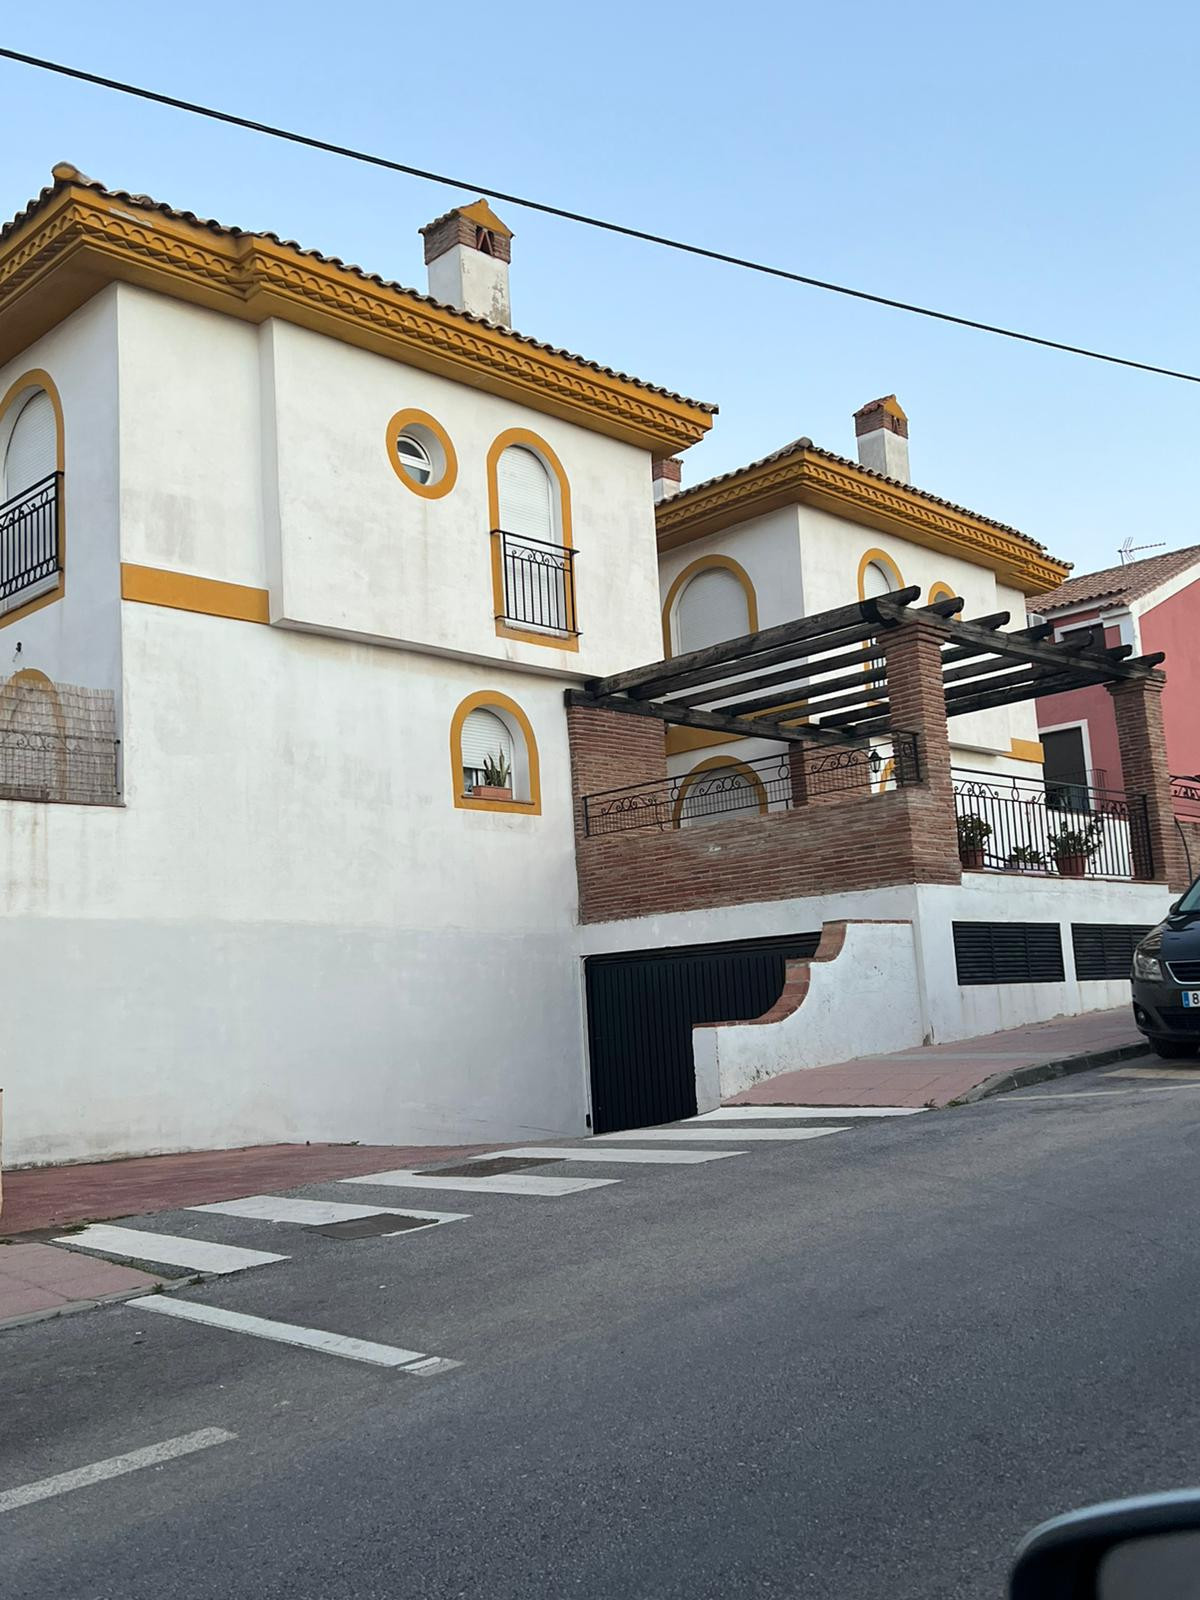 Townhouse, Manilva, Costa del Sol.